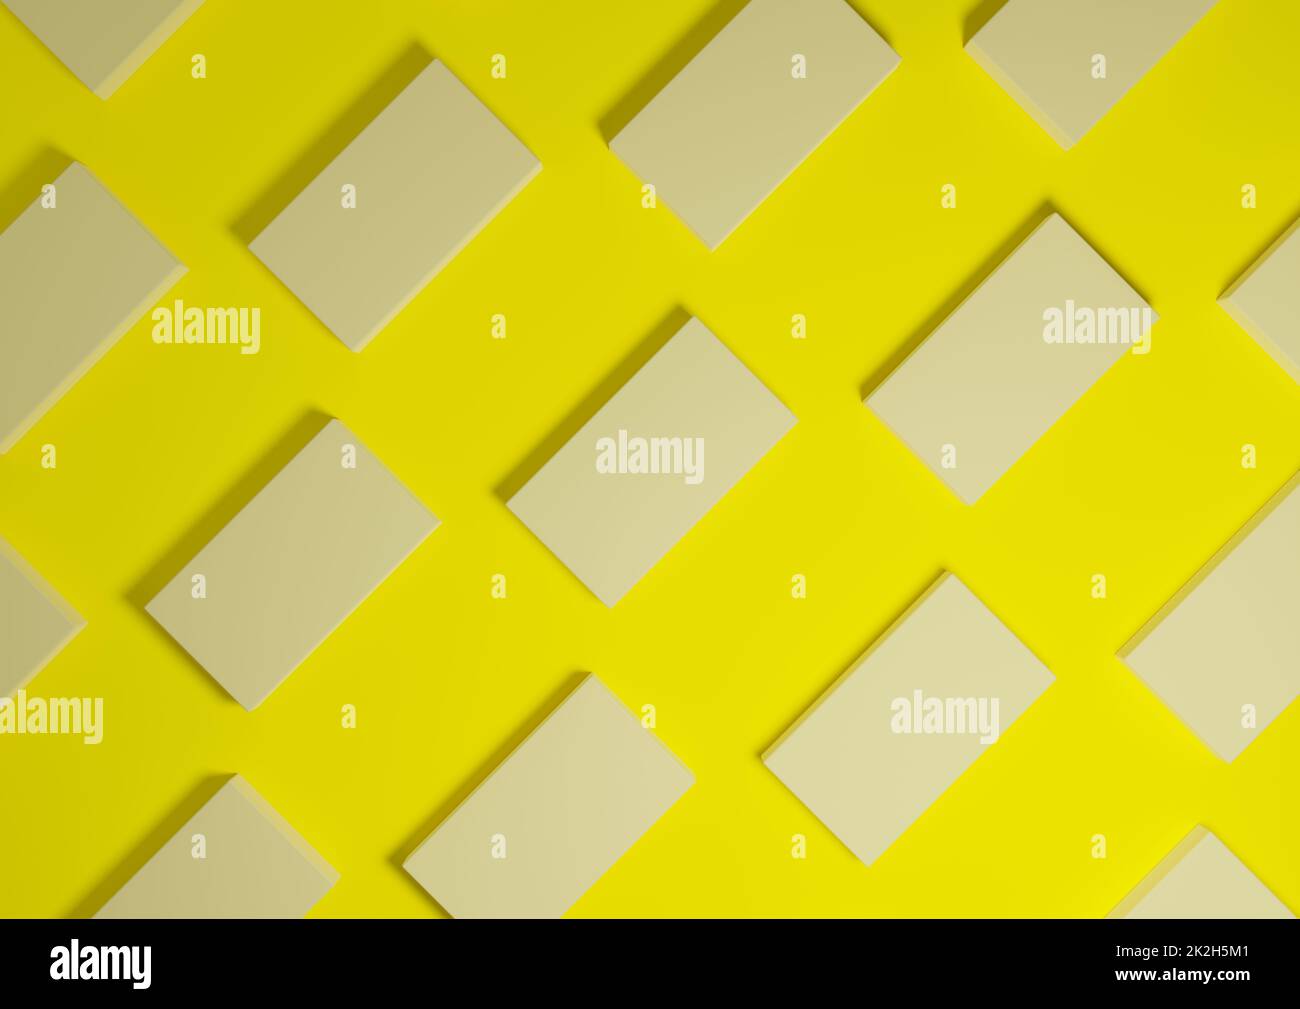 Luminoso, giallo neon, rendering 3D visualizzazione dall'alto minima, semplice e moderna visualizzazione piatta del prodotto da sopra lo sfondo con supporti quadrati ripetitivi in un modello Foto Stock